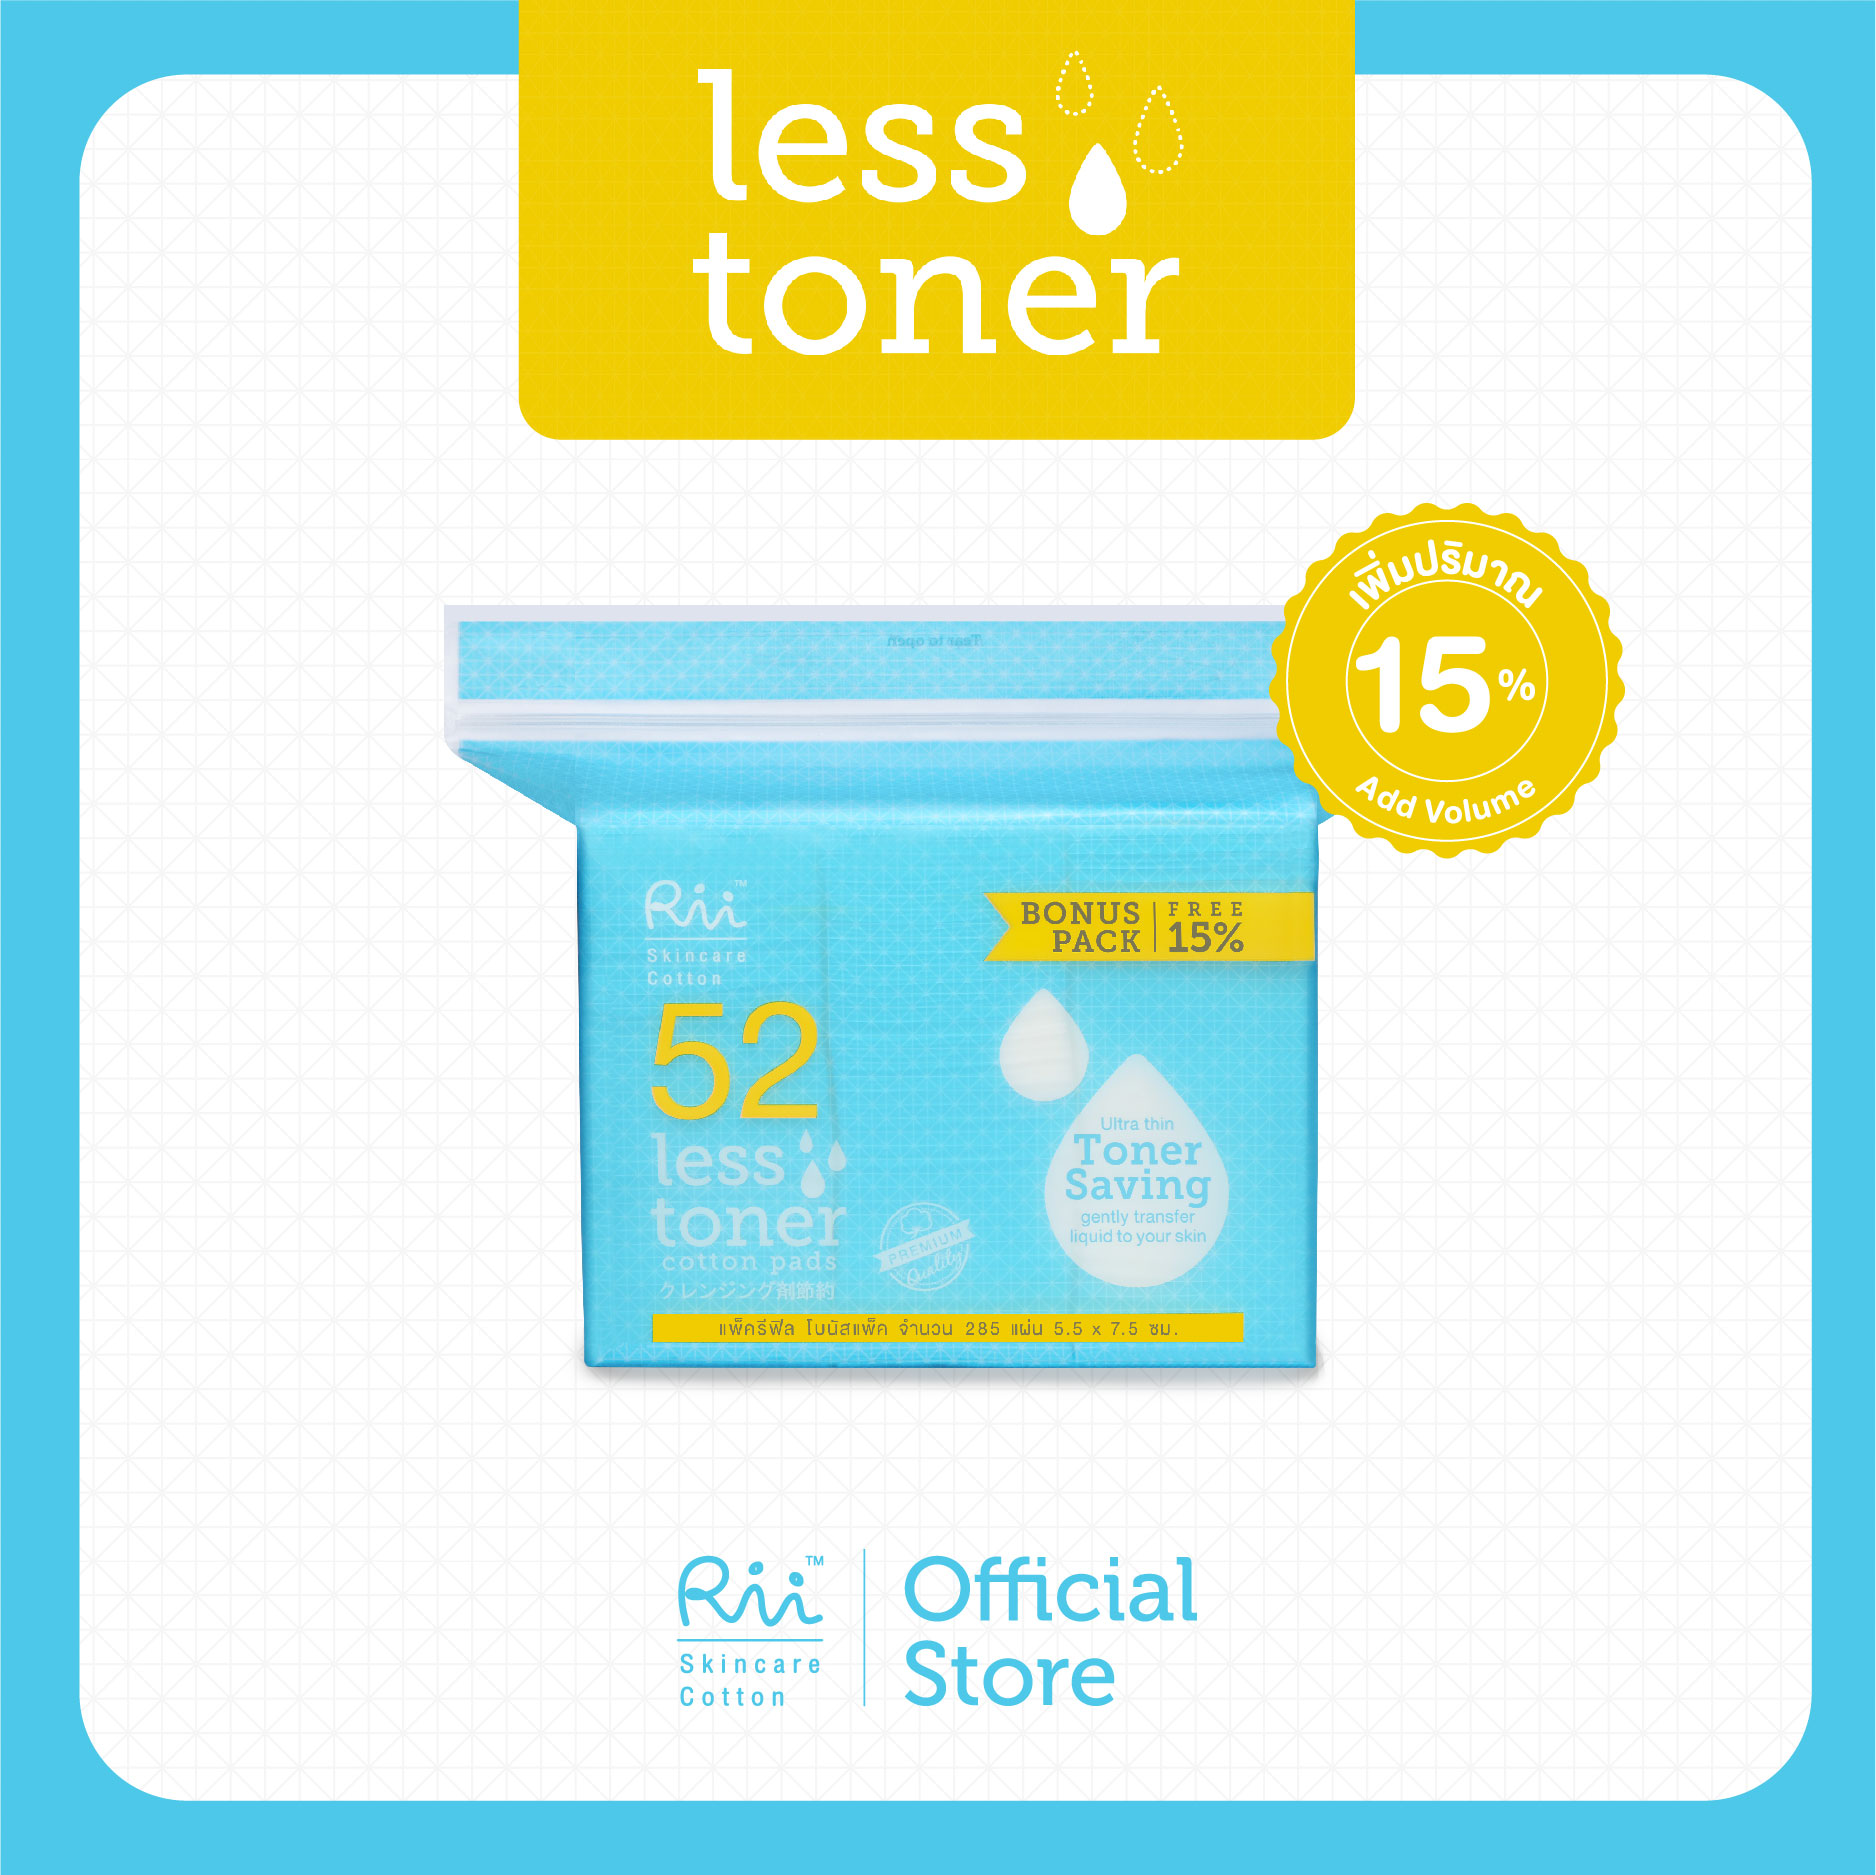 Rii 52 Less Toner Cotton Pads (Refill) Bonus Pack 285 Pcs./Bag